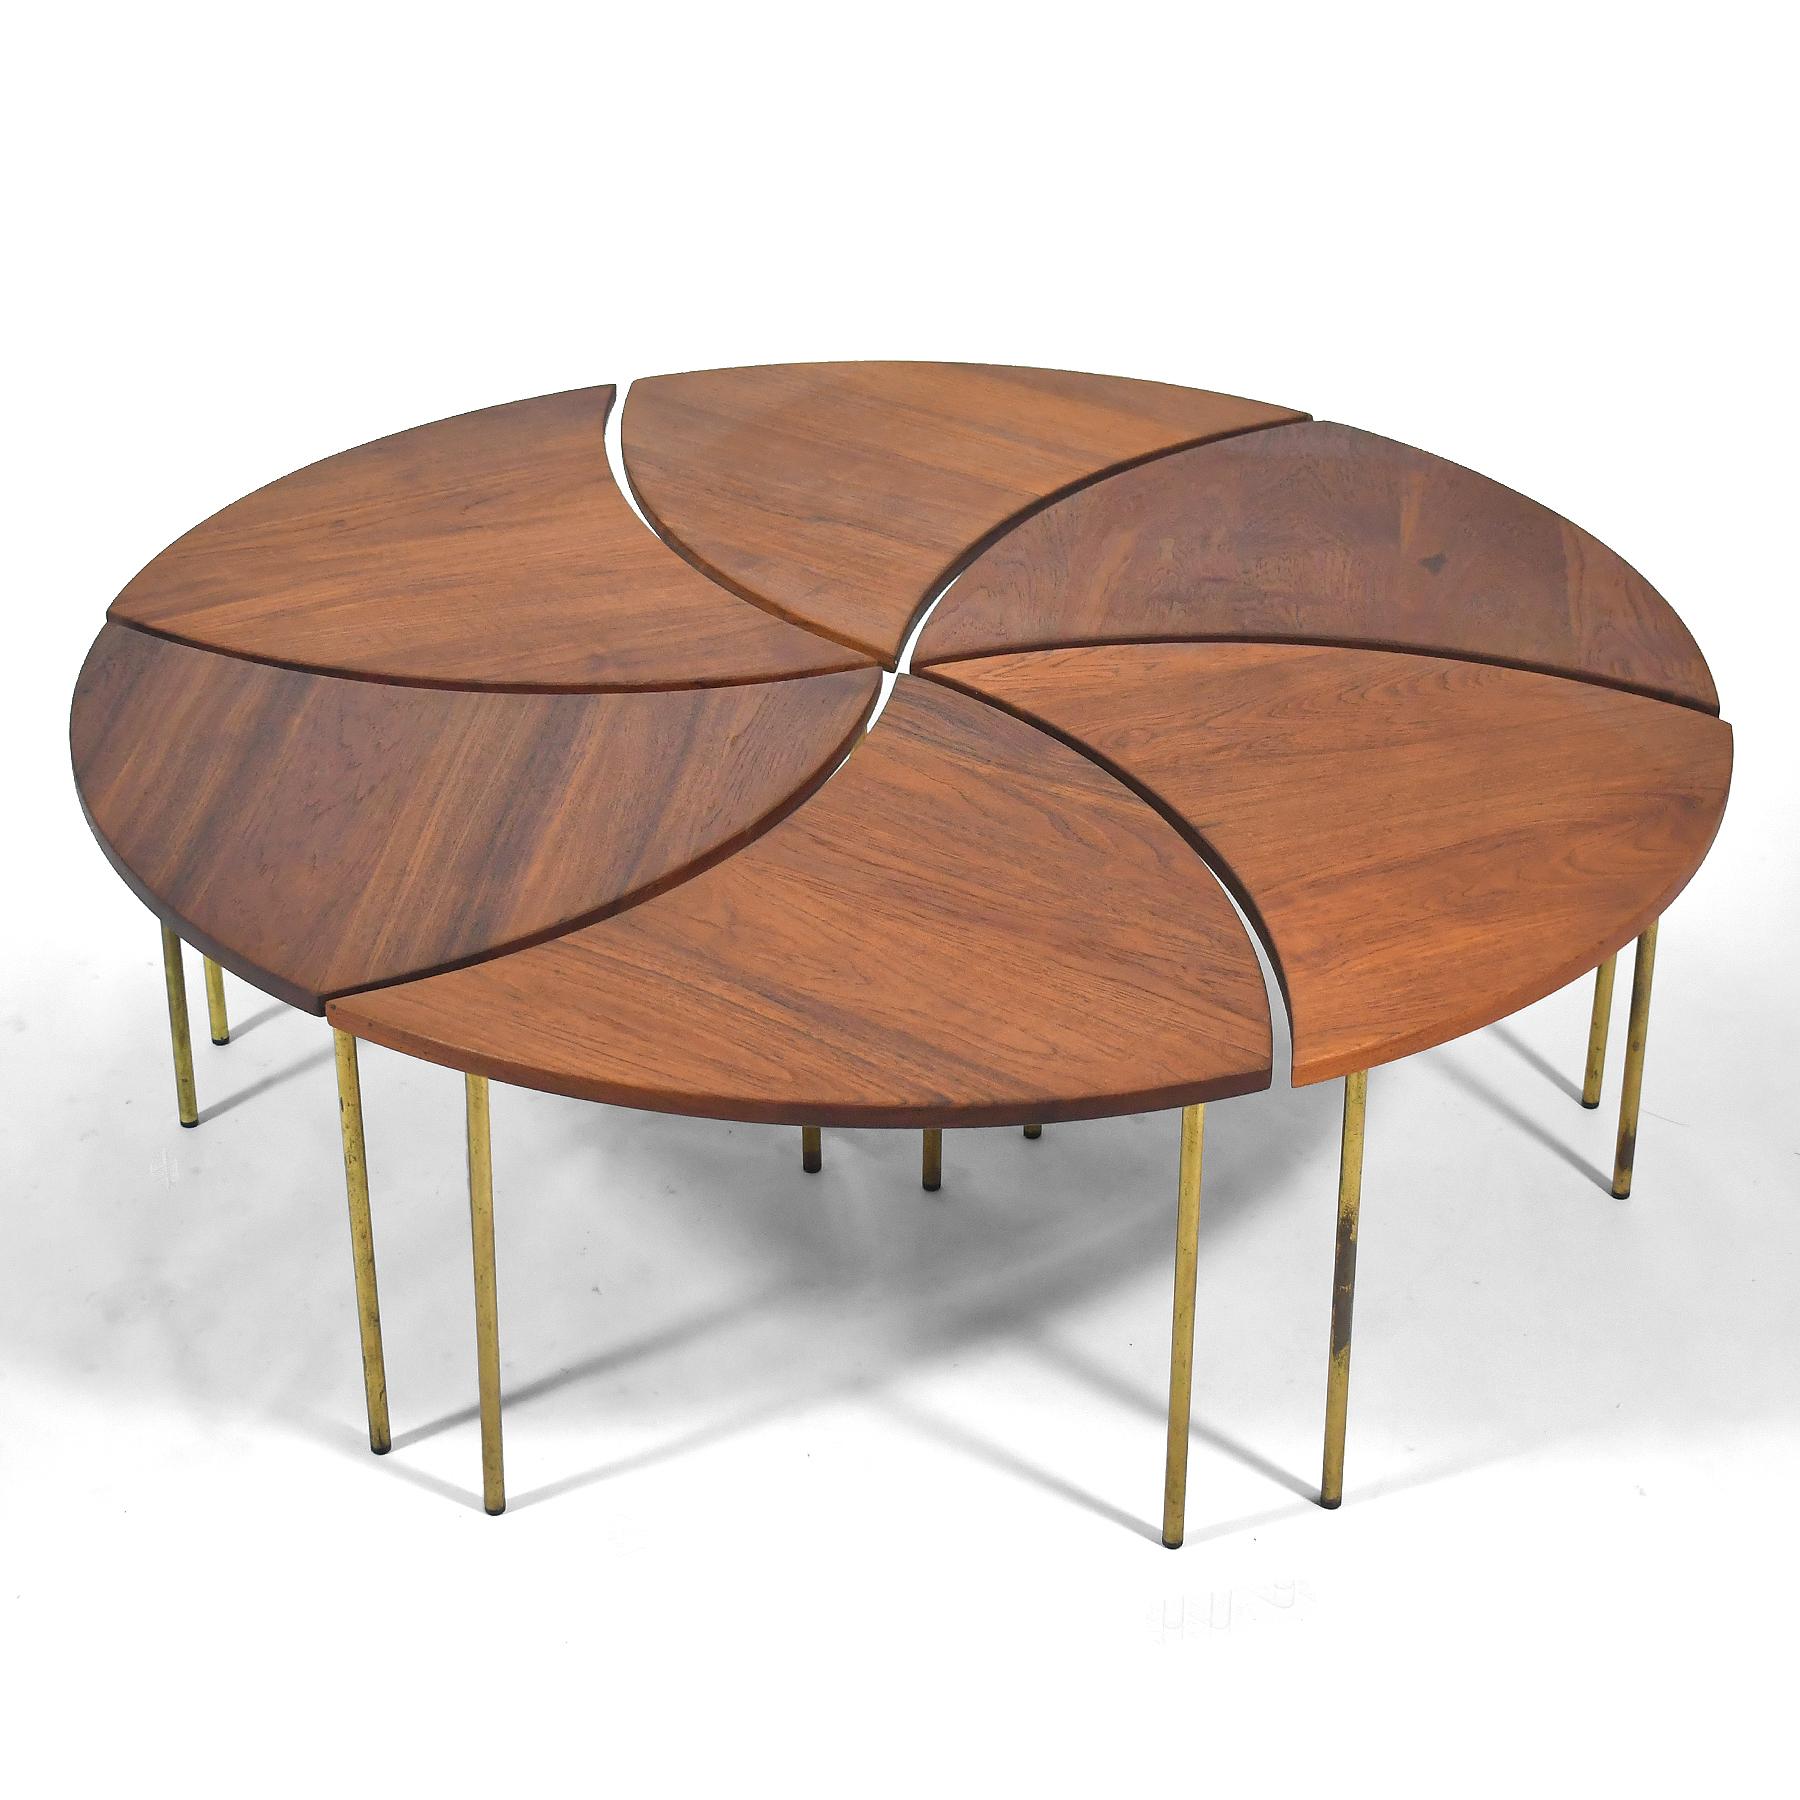 La table basse modèle #523 de France & Son est une création brillamment inventive de Peter Hvidt. Elle se compose de 6 tables individuelles en teck massif avec des pieds en laiton.  Lorsqu'elles sont disposées comme indiqué, elles forment un cercle